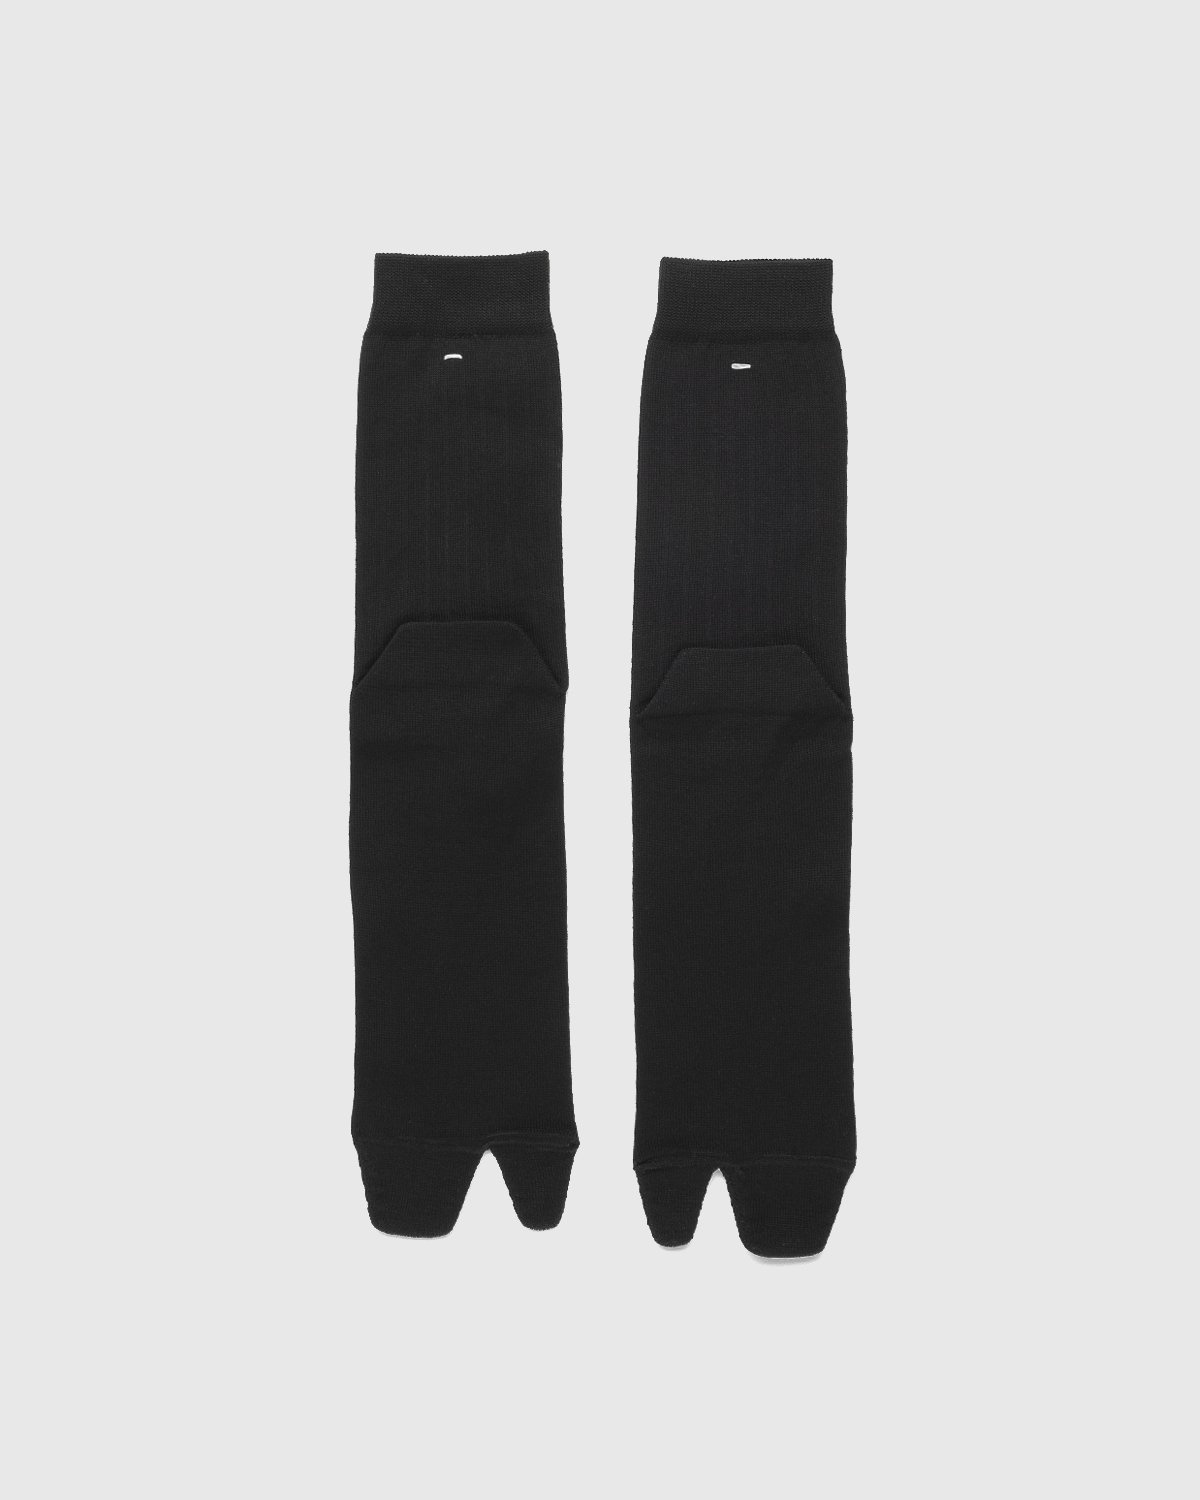 Maison Margiela – Tabi Socks Black - Socks - Black - Image 1